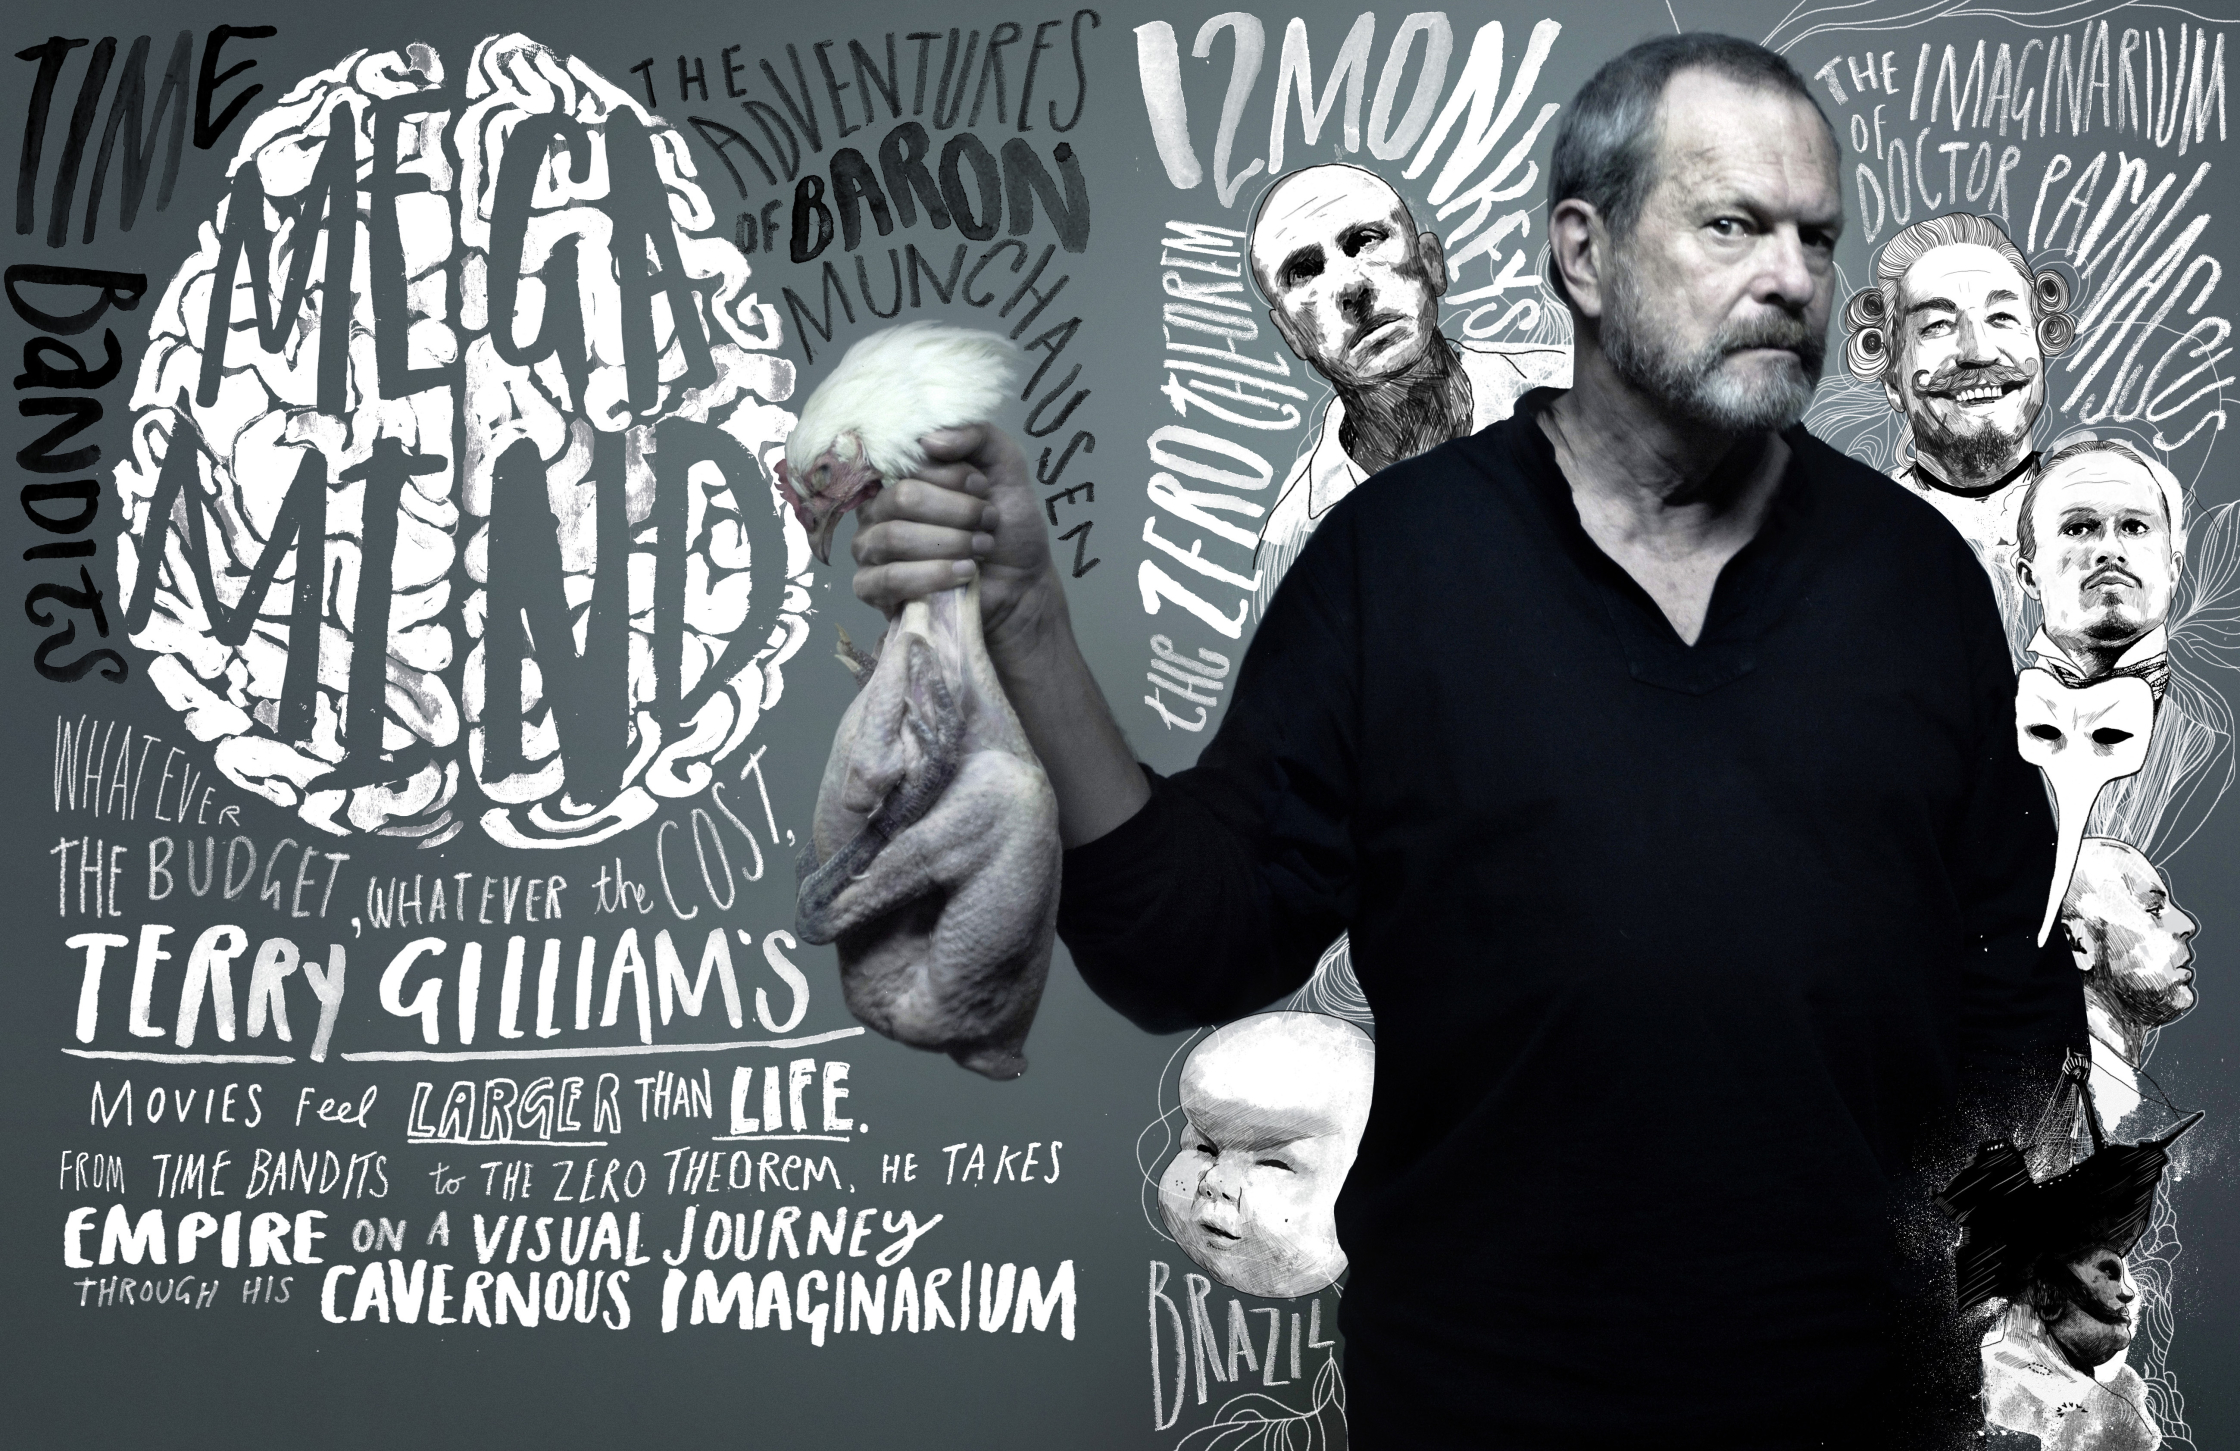 Terry Gilliam / Empire Magazine